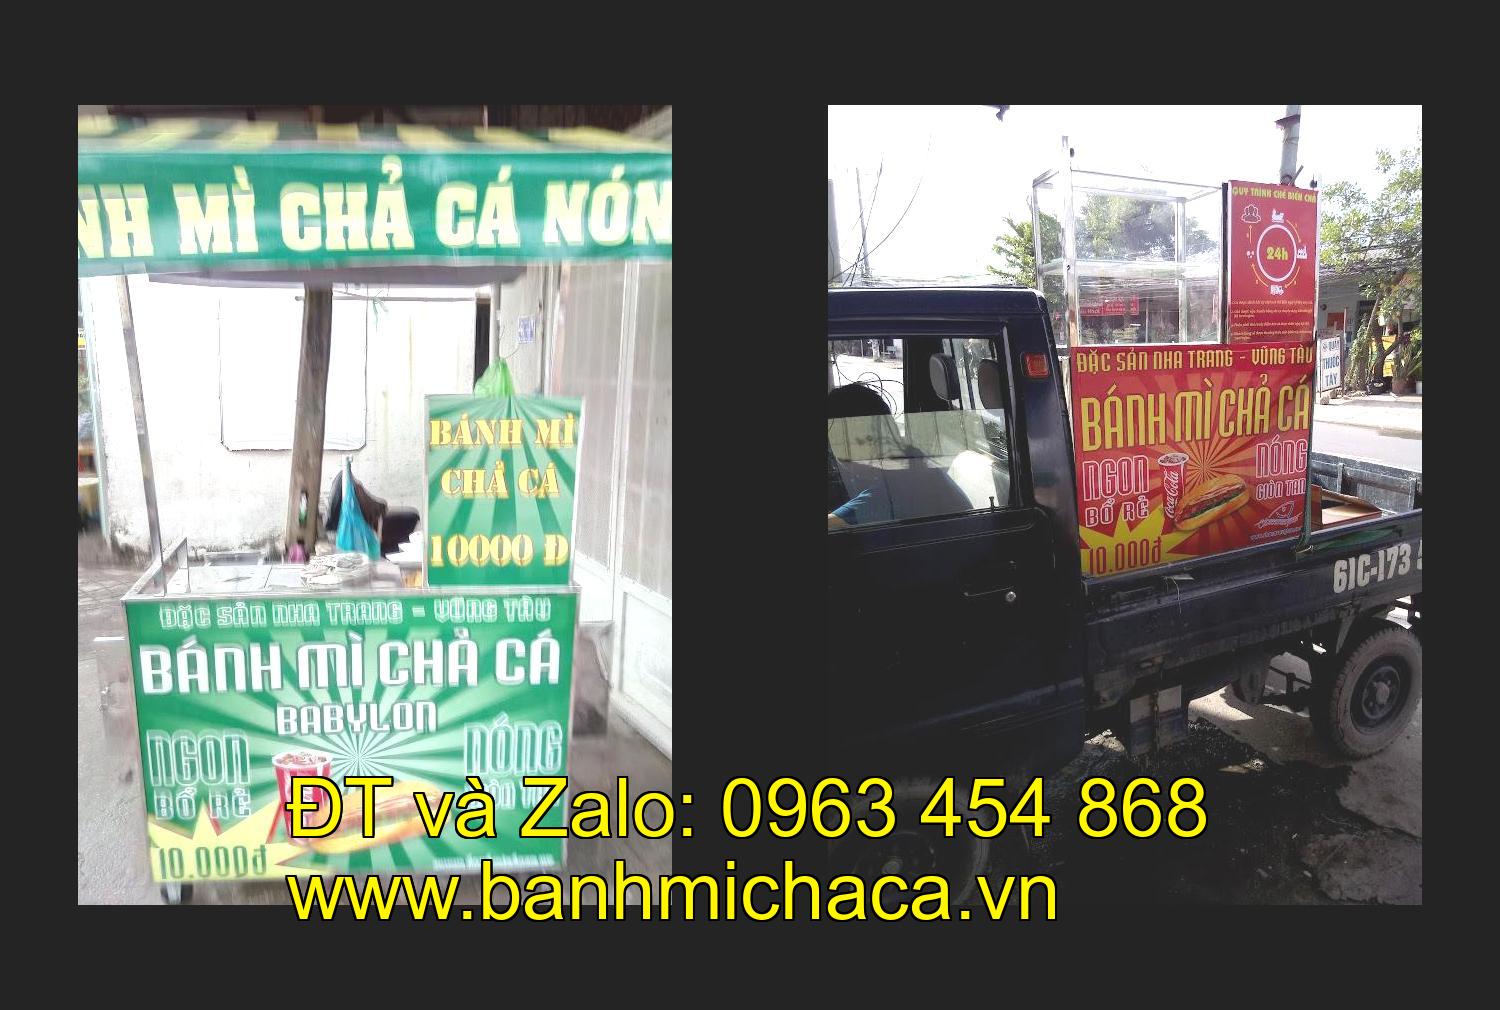 xe bánh mì chả cá giá rẻ tại tỉnh Bắc Giang